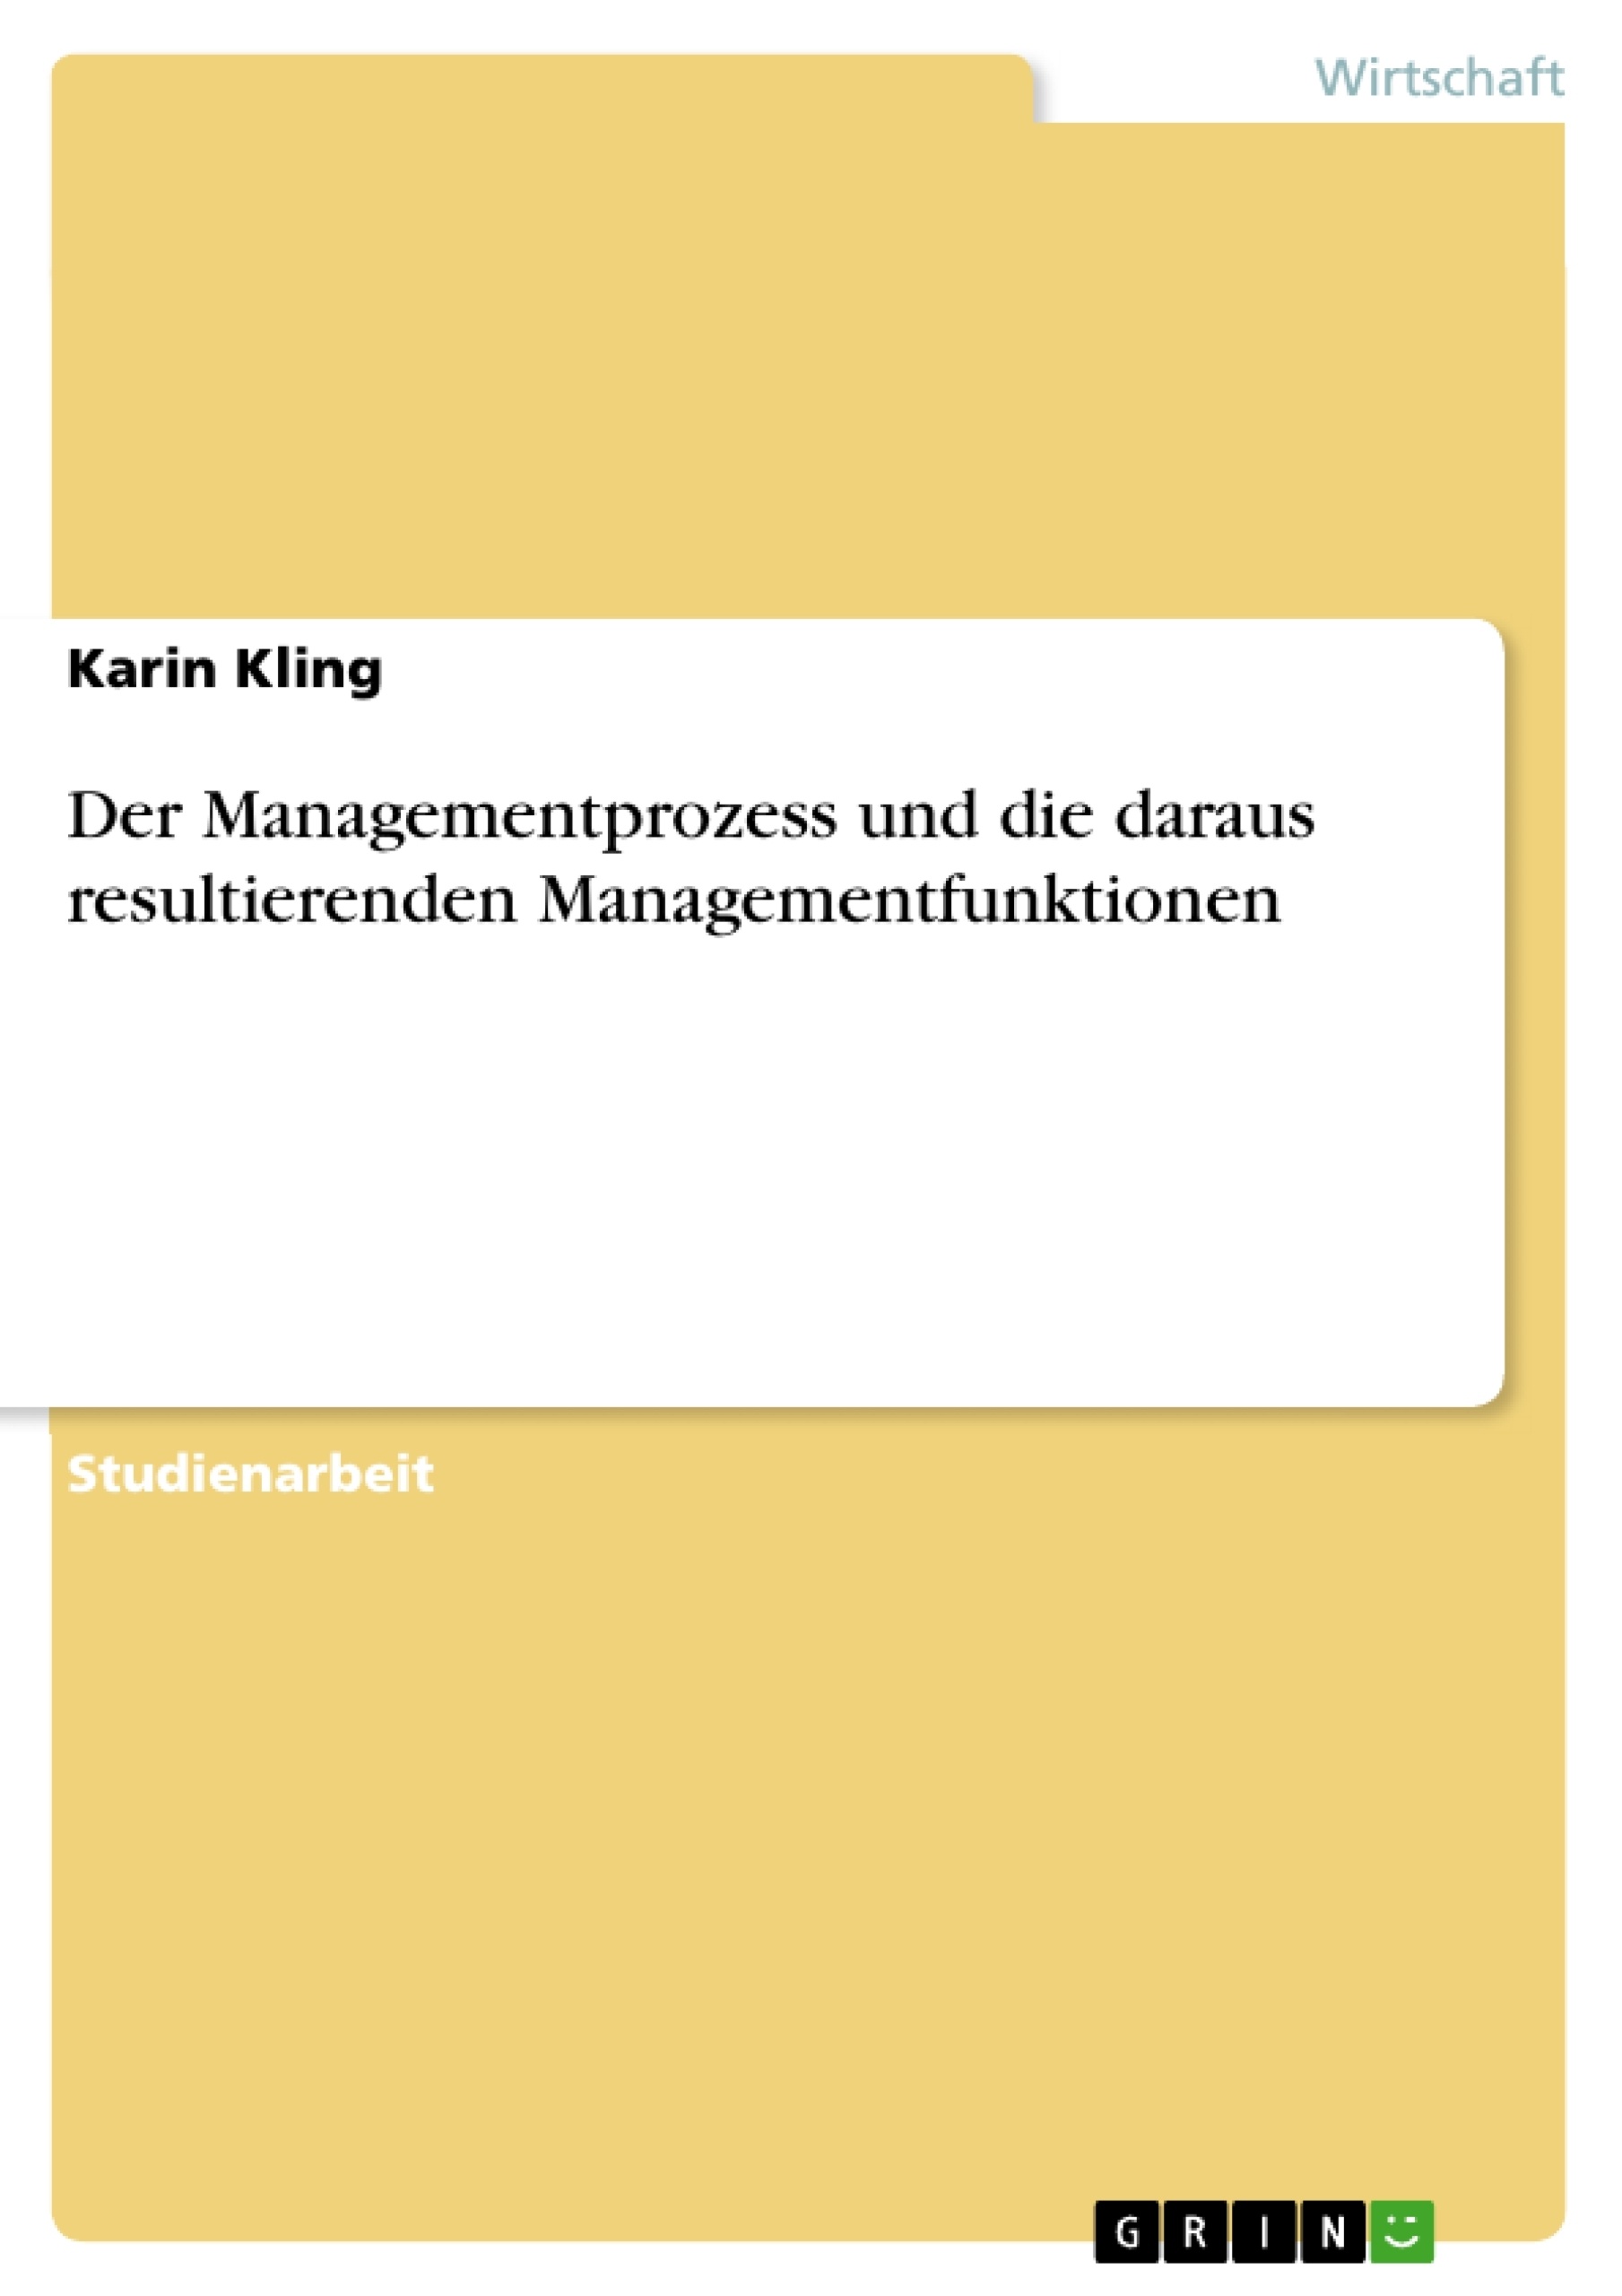 Title: Der Managementprozess und die daraus resultierenden Managementfunktionen